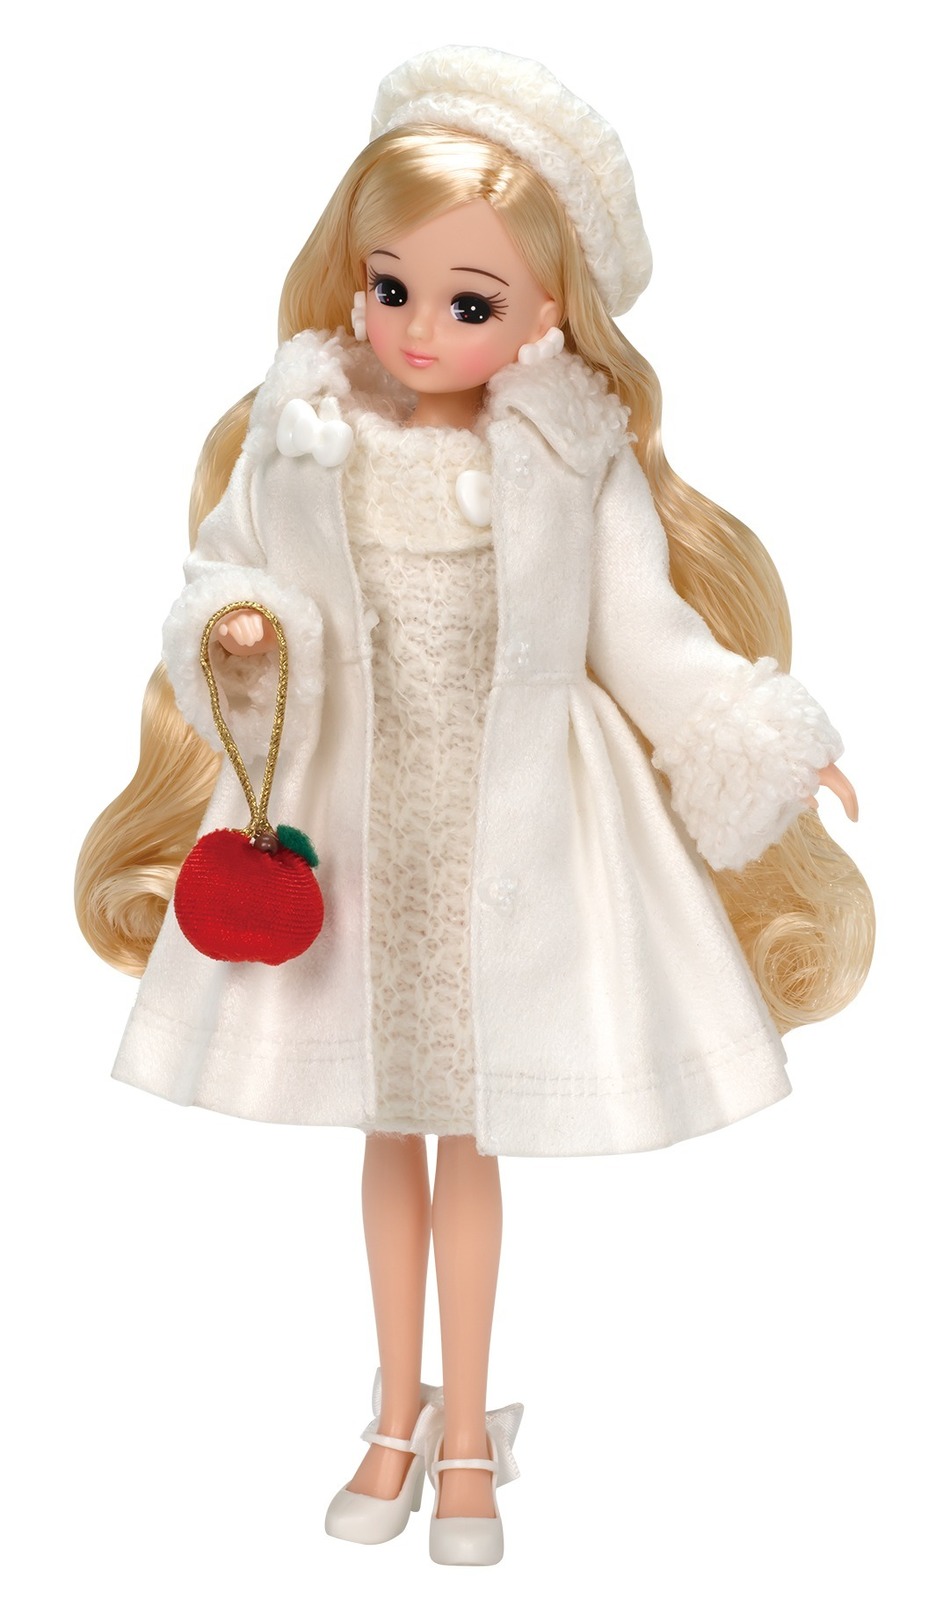 リカちゃん サンリオ ハローキティ のコラボドール リボンのホワイトワンピース りんごバッグ ファッションプレス